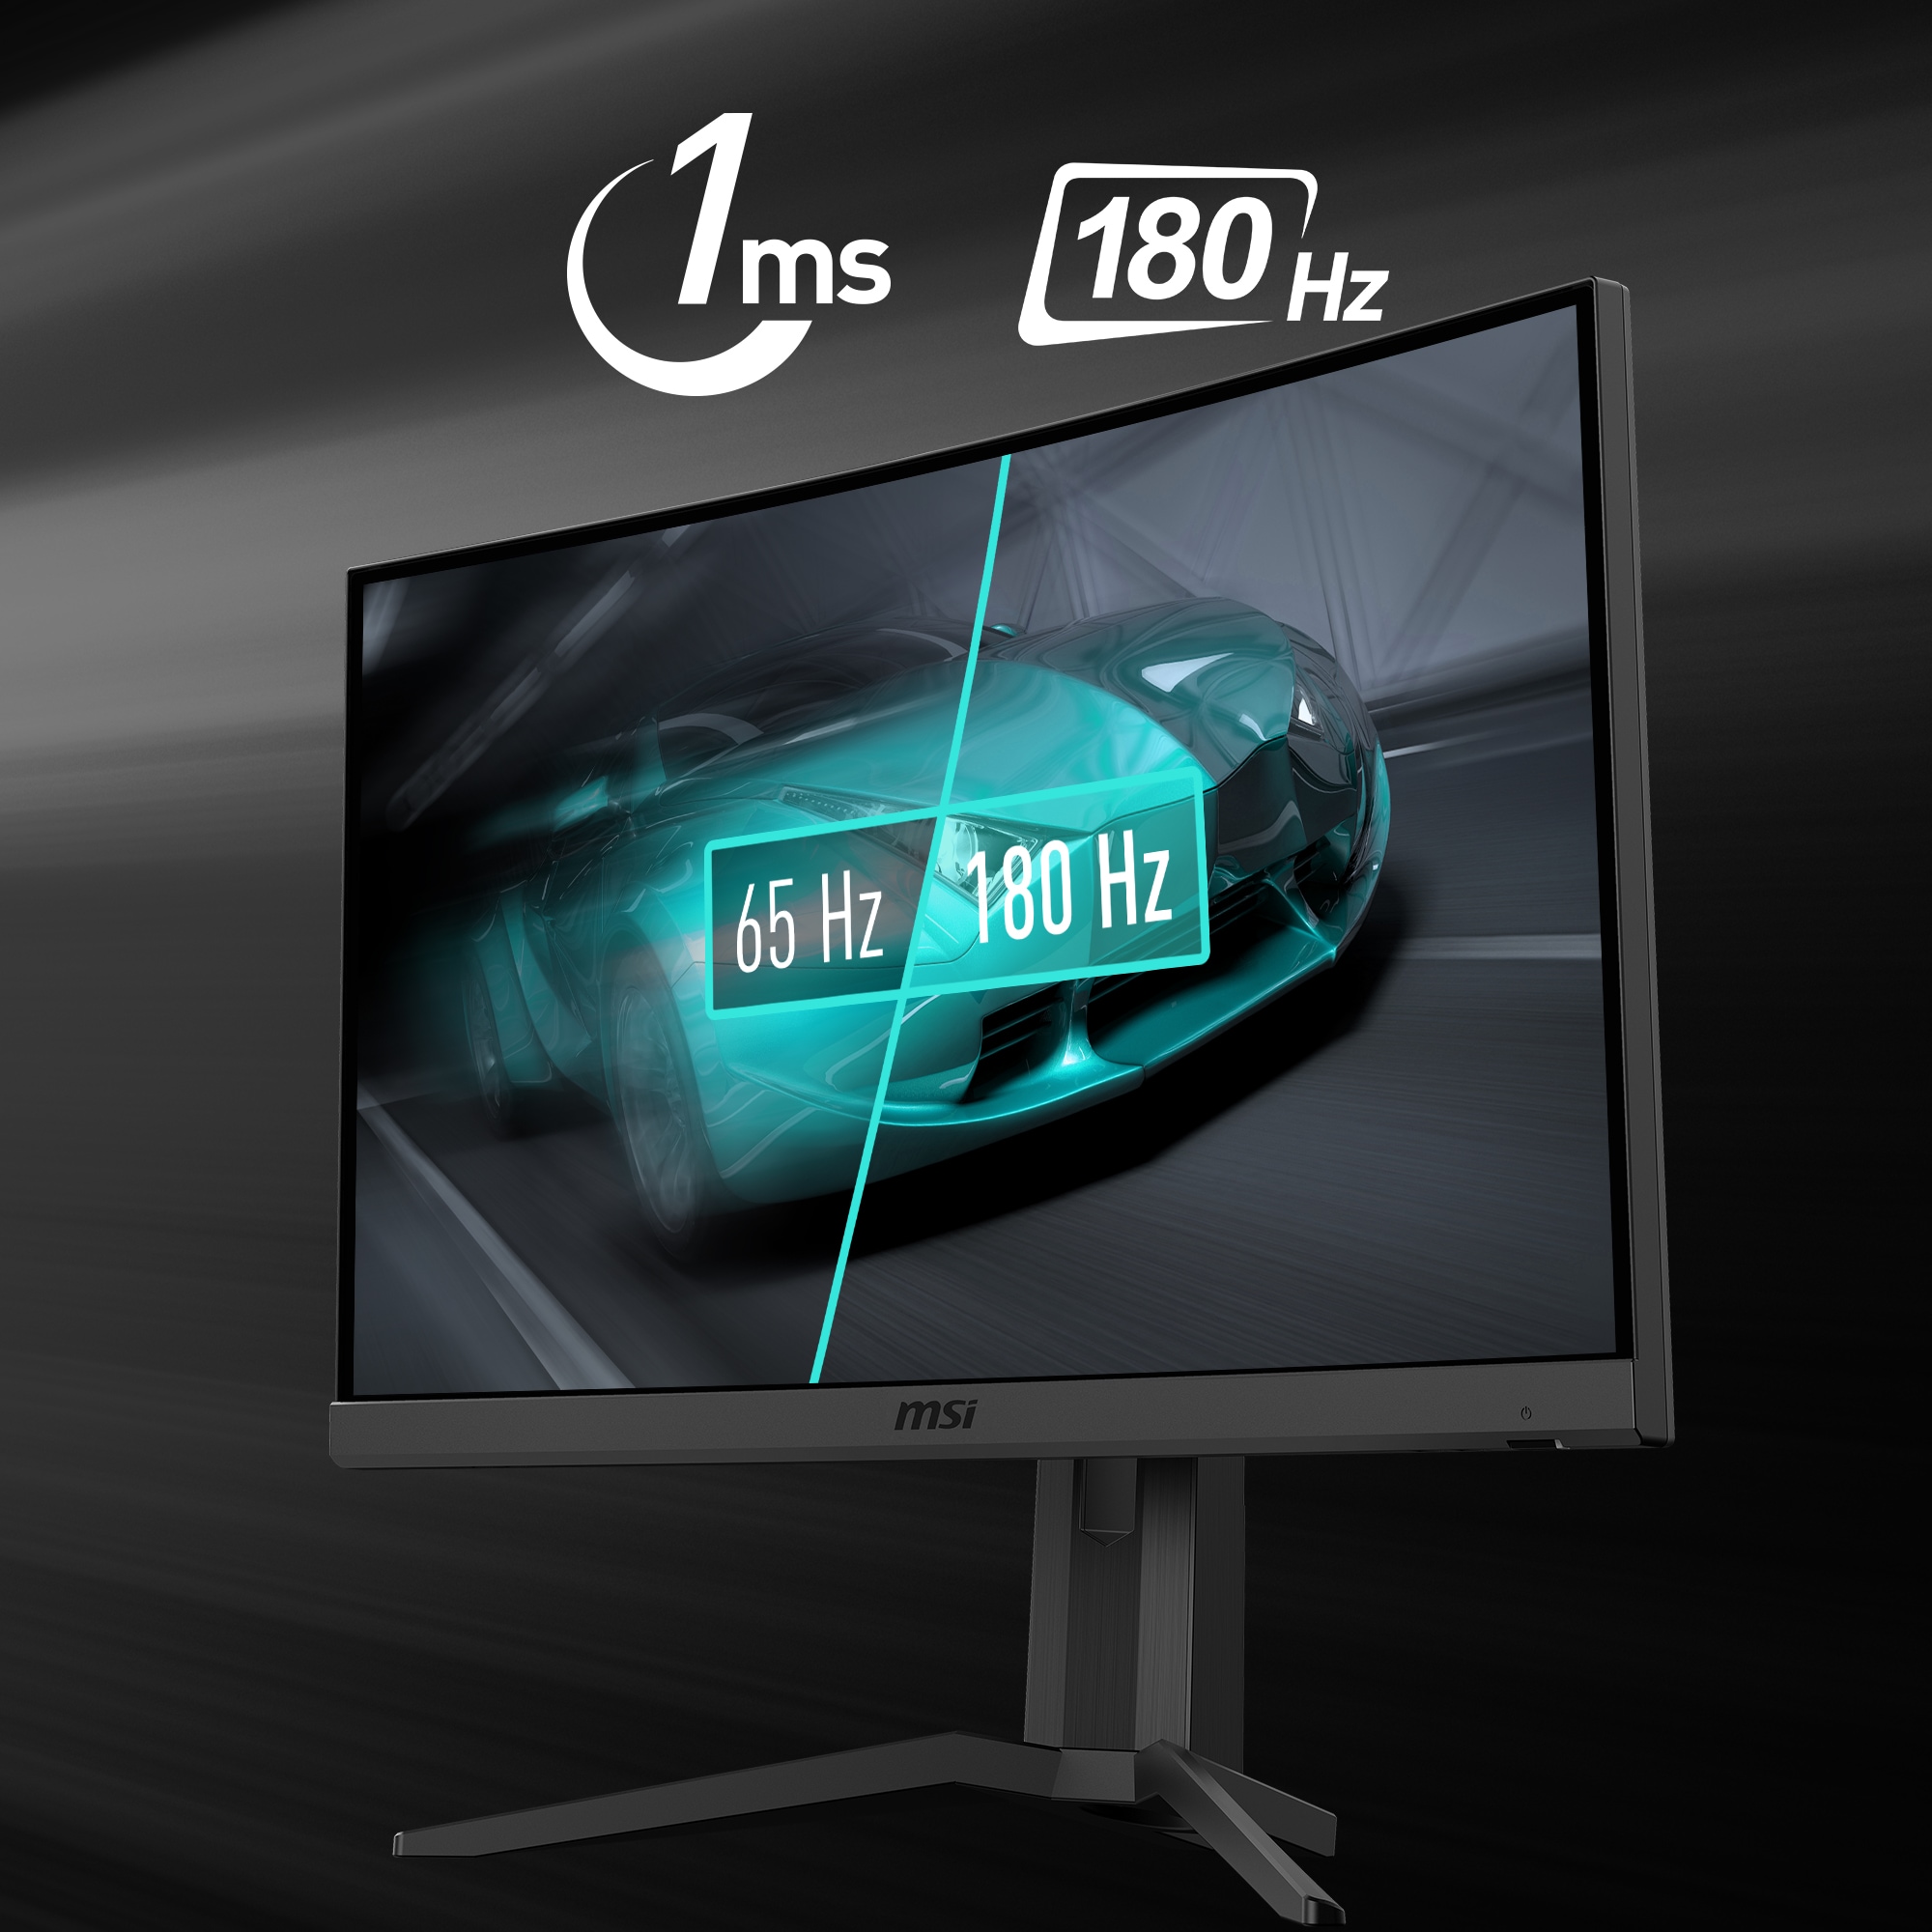 MSI Curved-Gaming-LED-Monitor »G24C6P E2«, 59,9 cm/24 Zoll, 1920 x 1080 px, Full HD, 1 ms Reaktionszeit, 180 Hz, höhenverstellbar, 3 Jahre Herstellergarantie